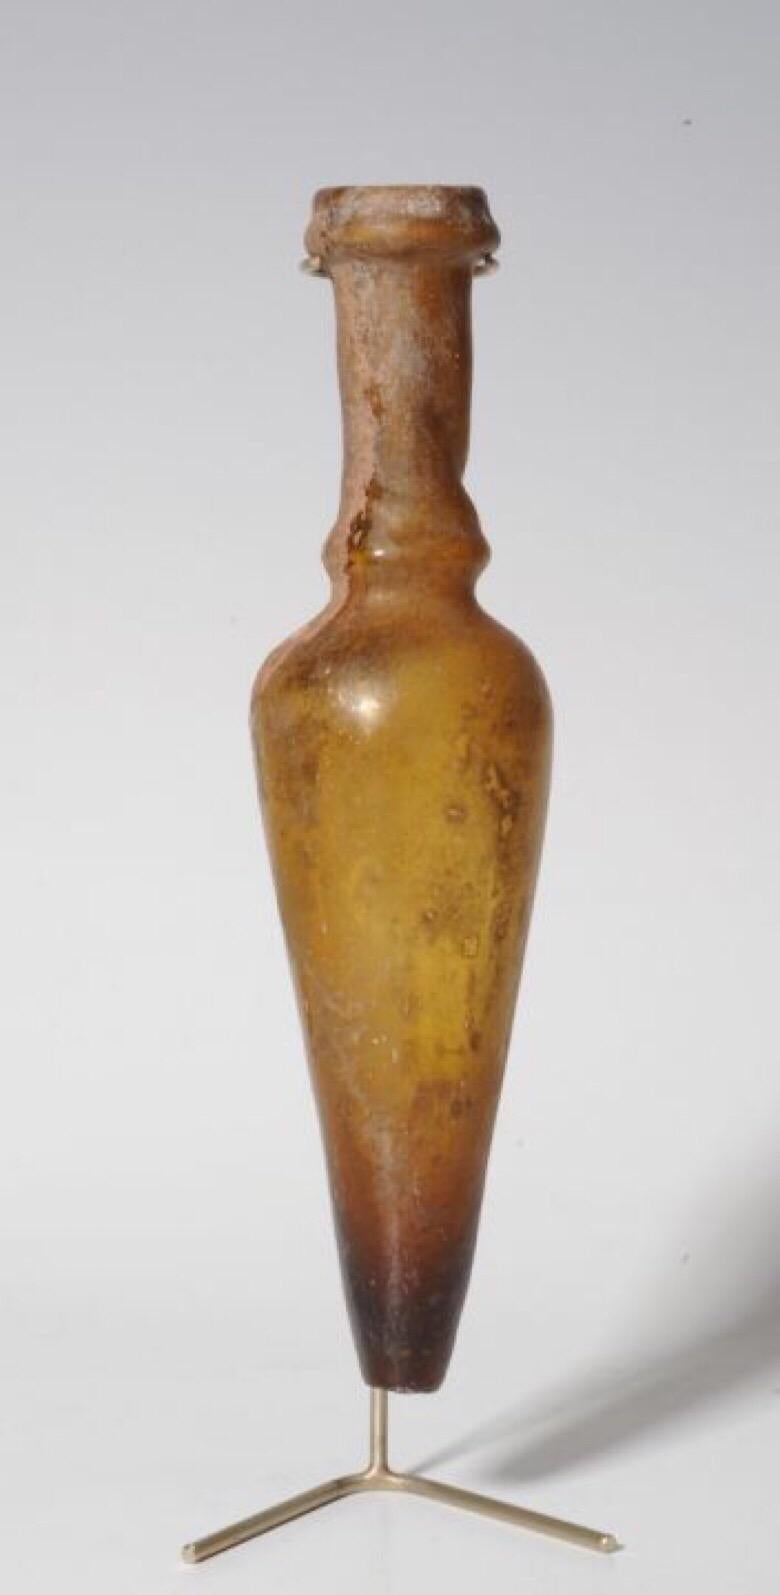 Classical Roman Amphora Amber-Colored Glass Bottle, Roman Period, circa 4th Century AD